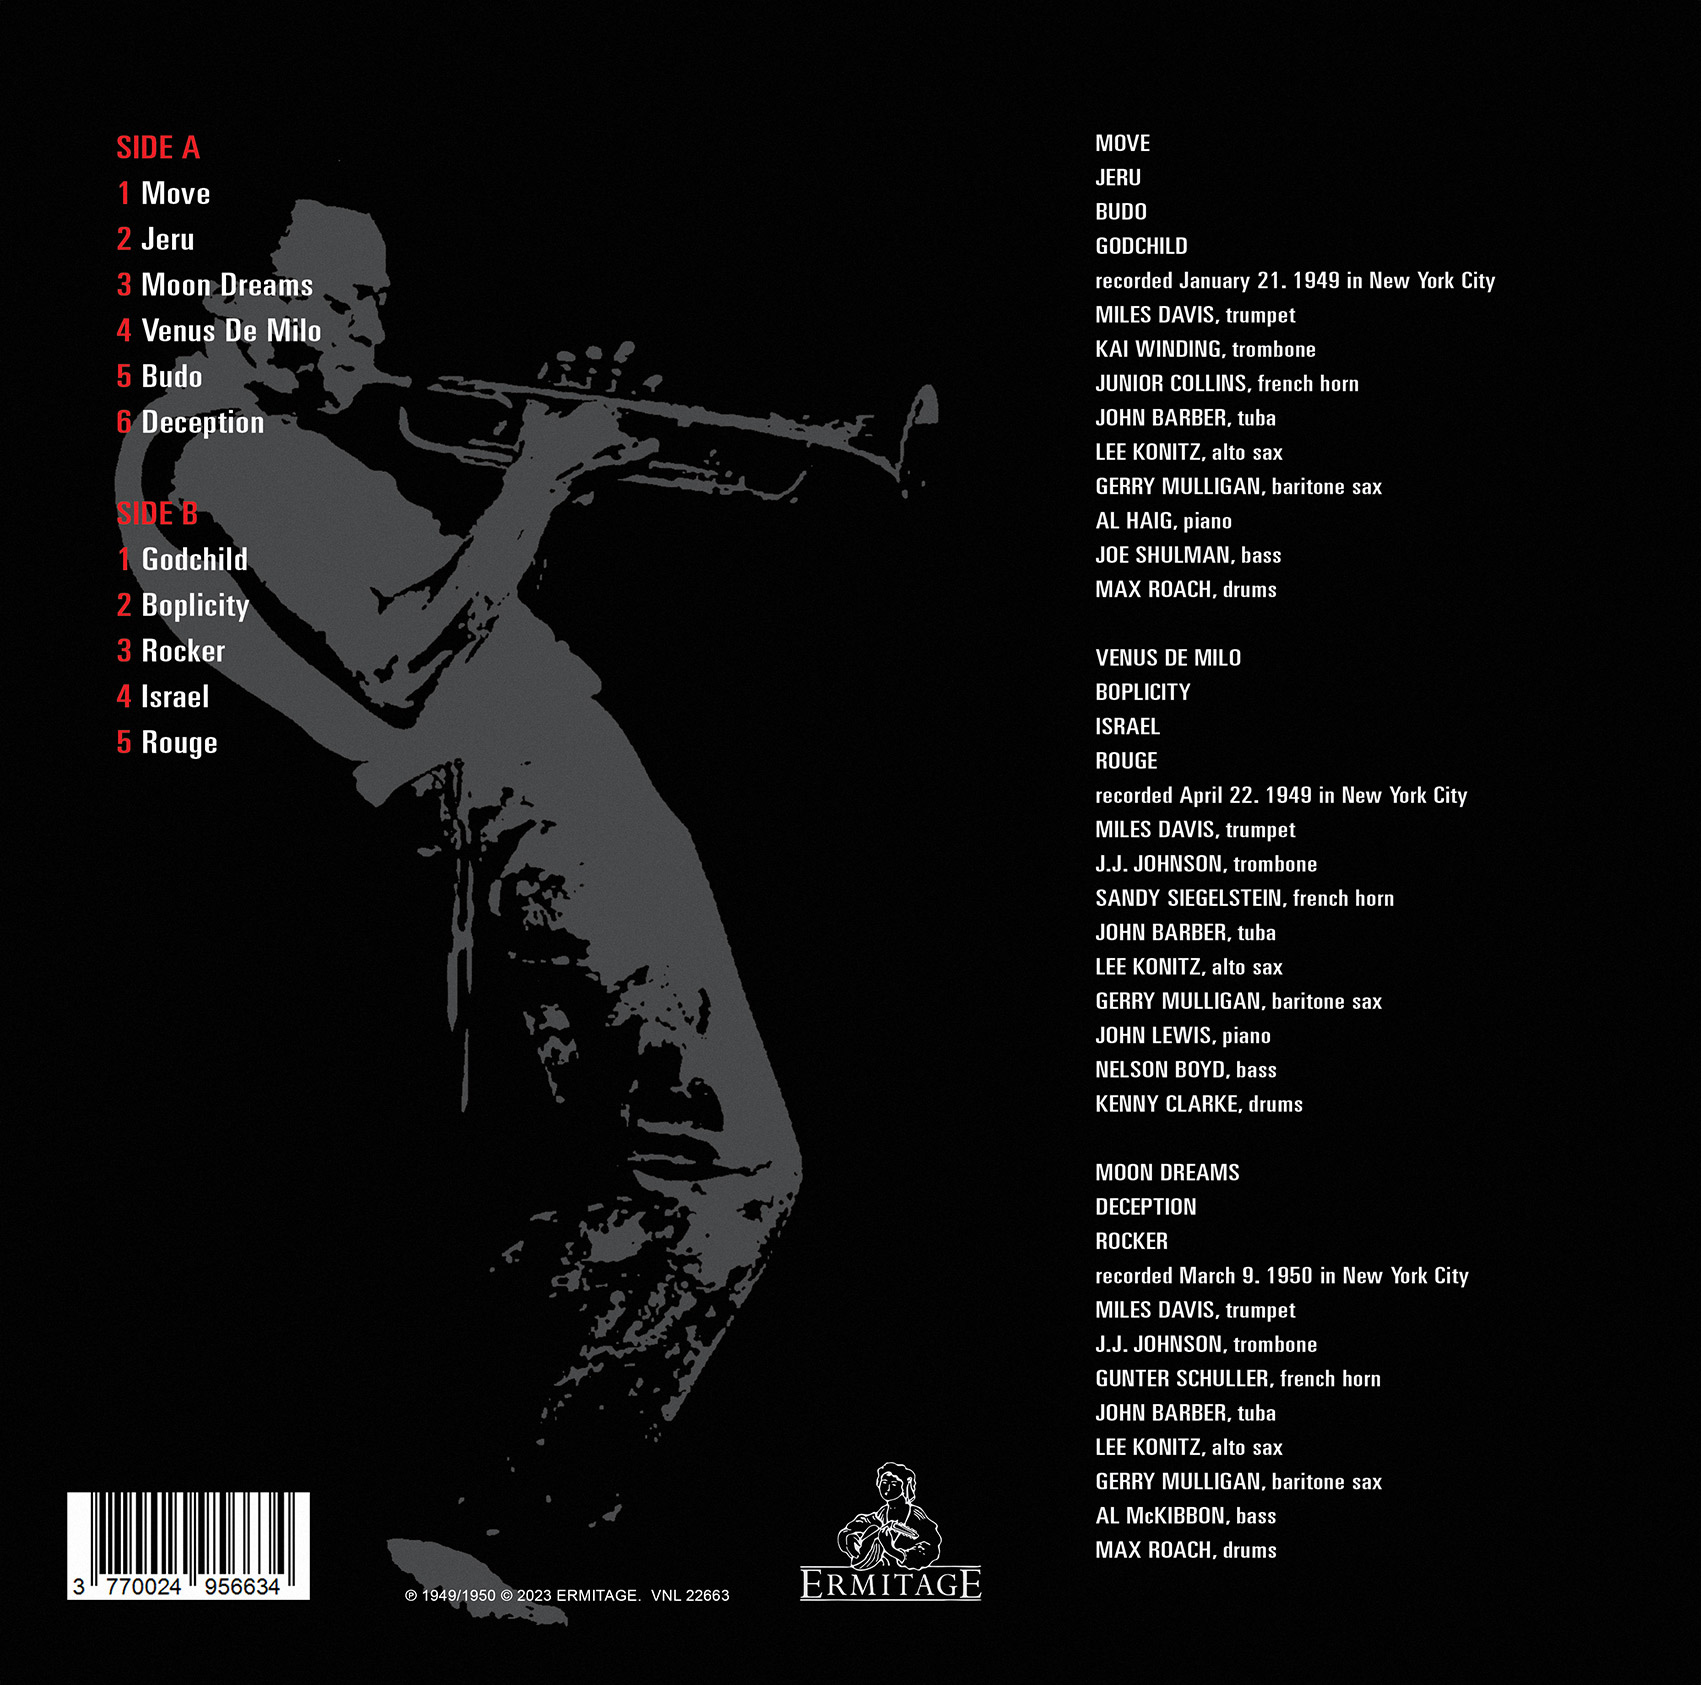 Miles Davis (마일스 데이비스) - Birth Of The Cool [옐로우 컬러 LP]